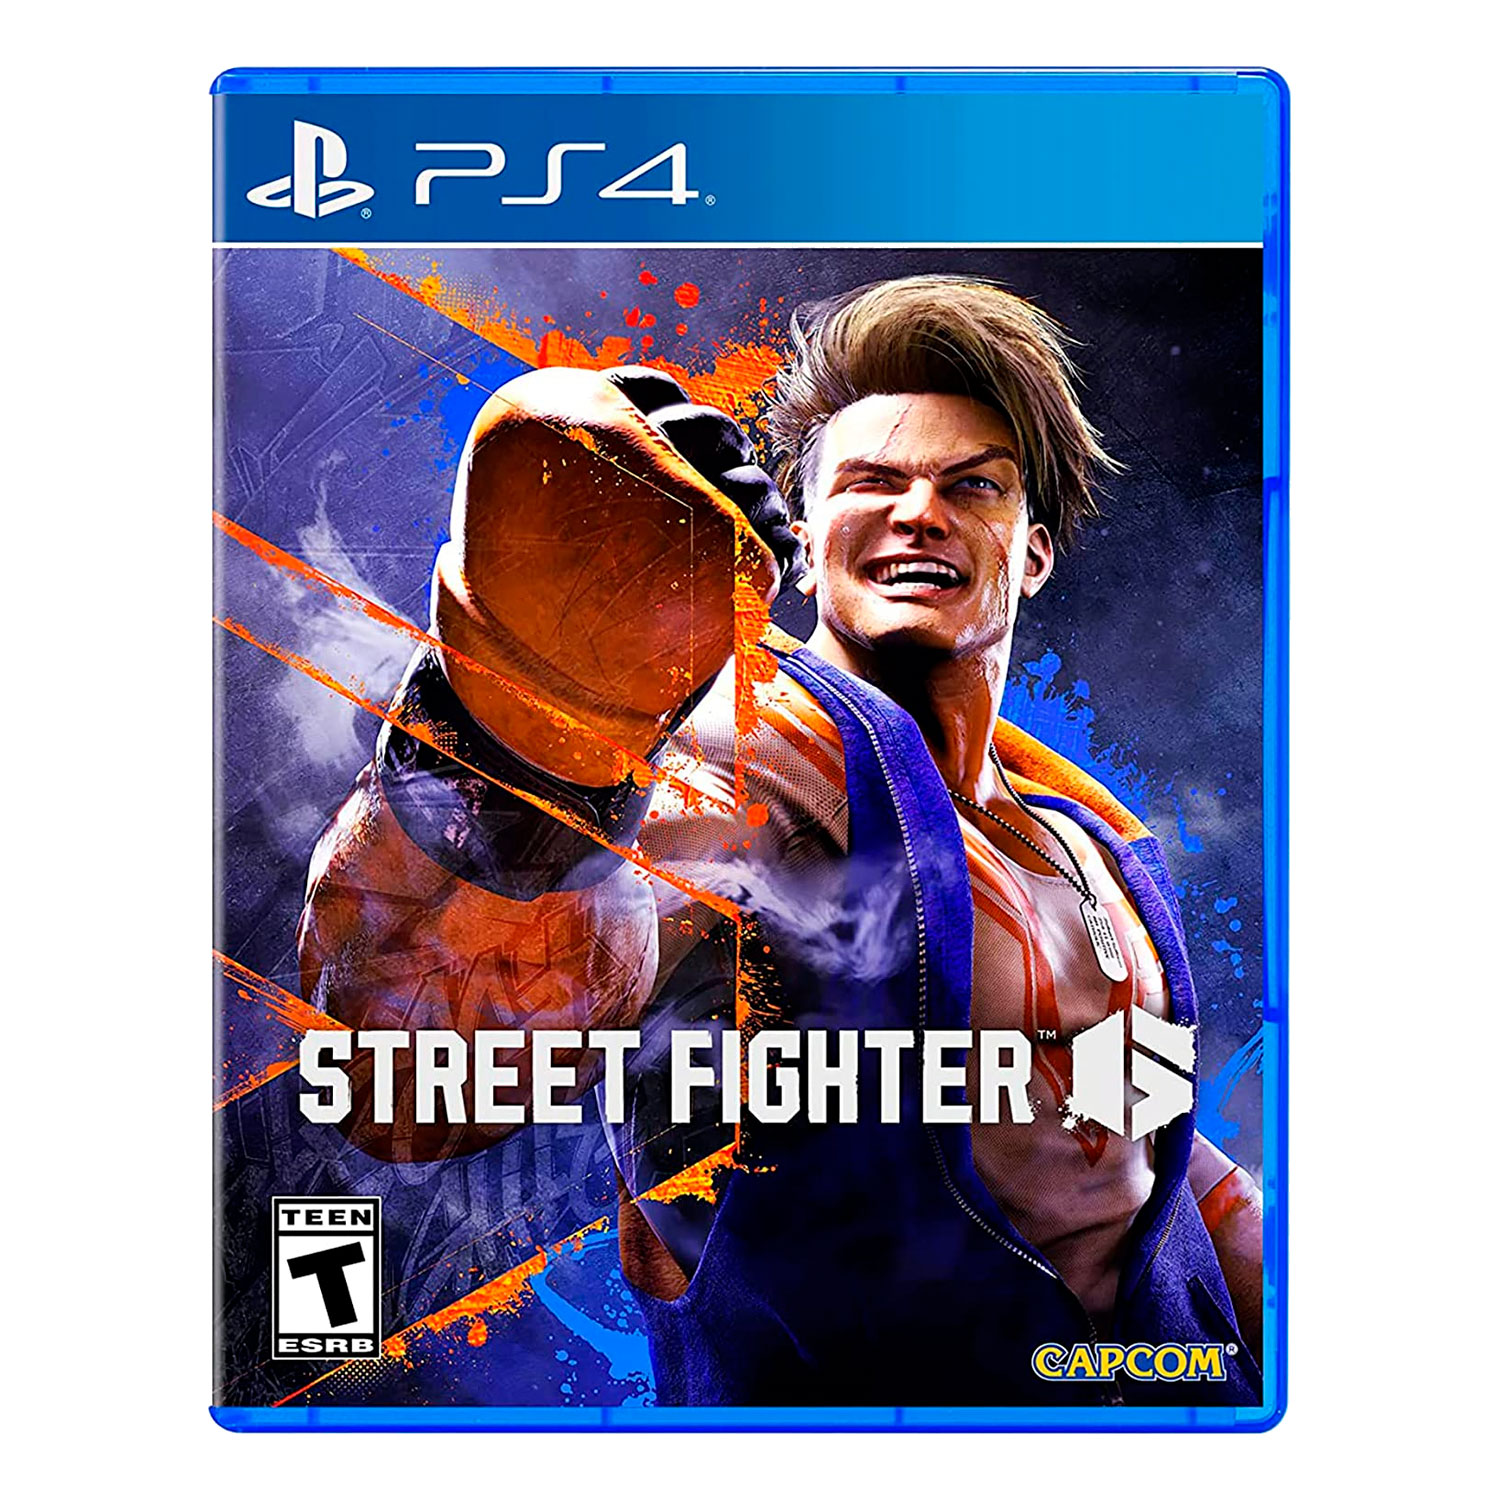 Street Fighter 6: veja lista com todos os lutadores e modos de jogo